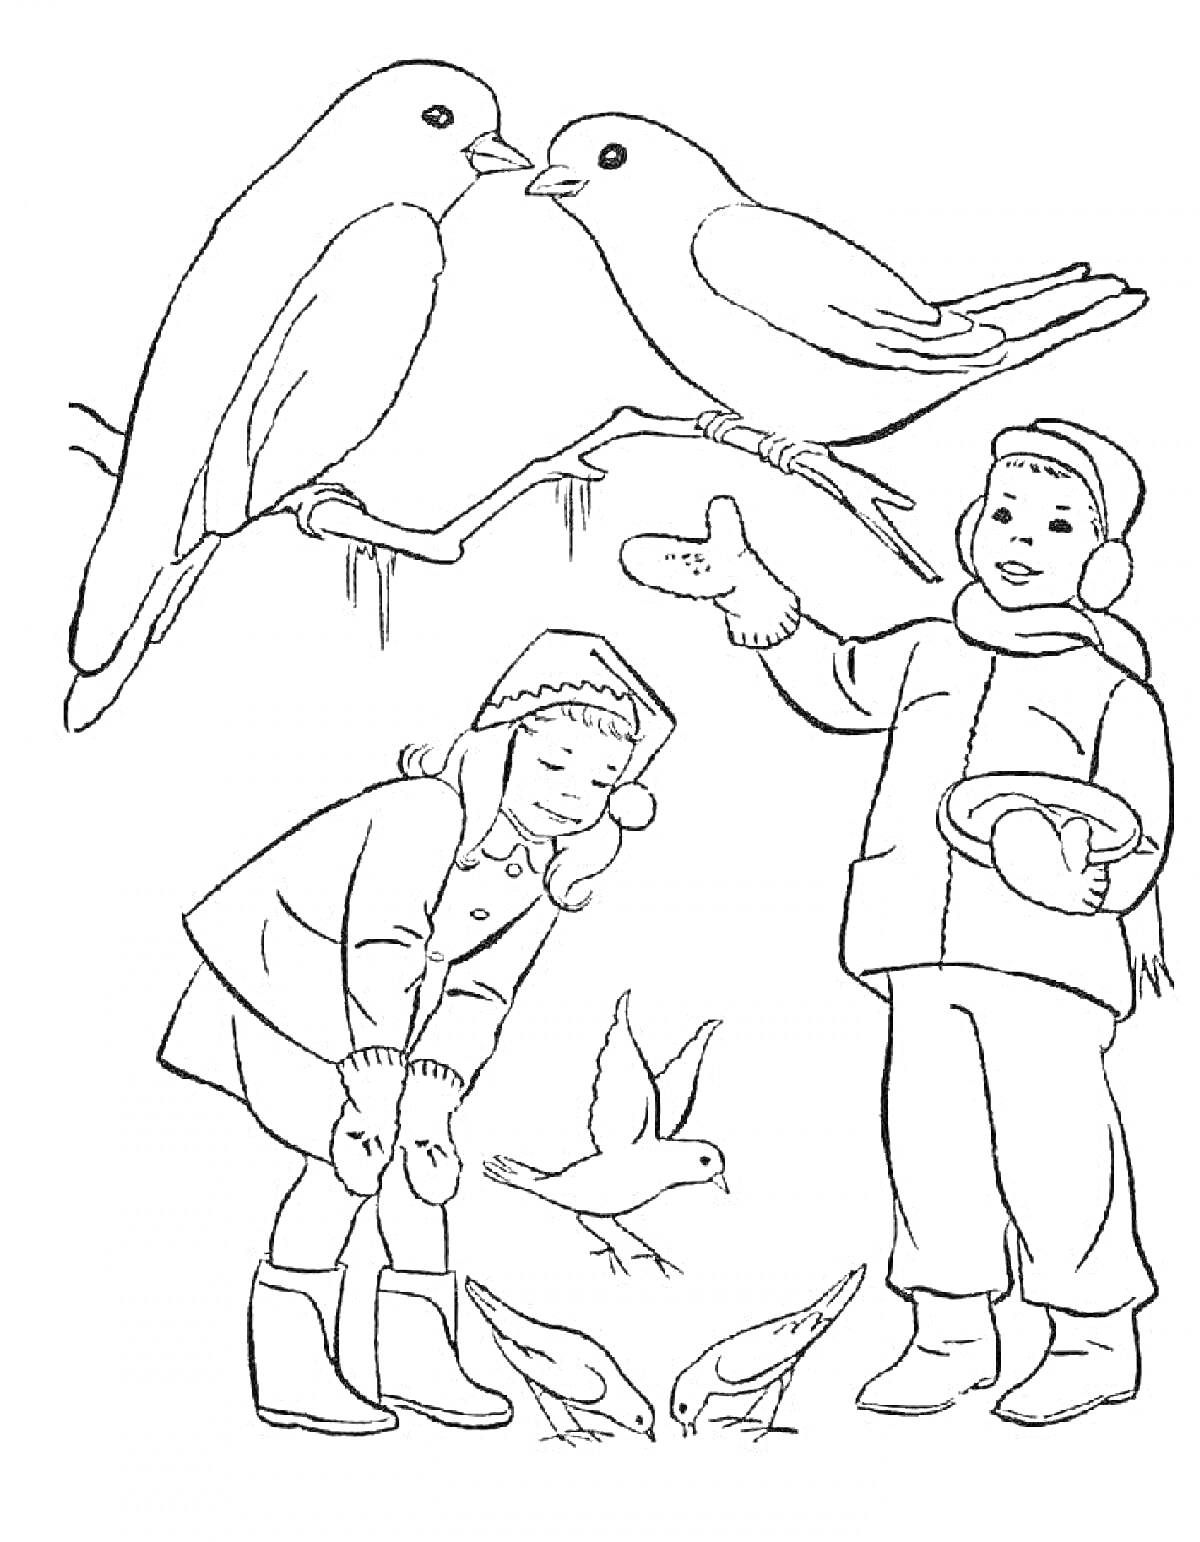 Раскраска Дети кормят птиц зимой. Два ребёнка в зимней одежде, один держит миску, два крупных сидящих на ветках и три маленькие птицы.